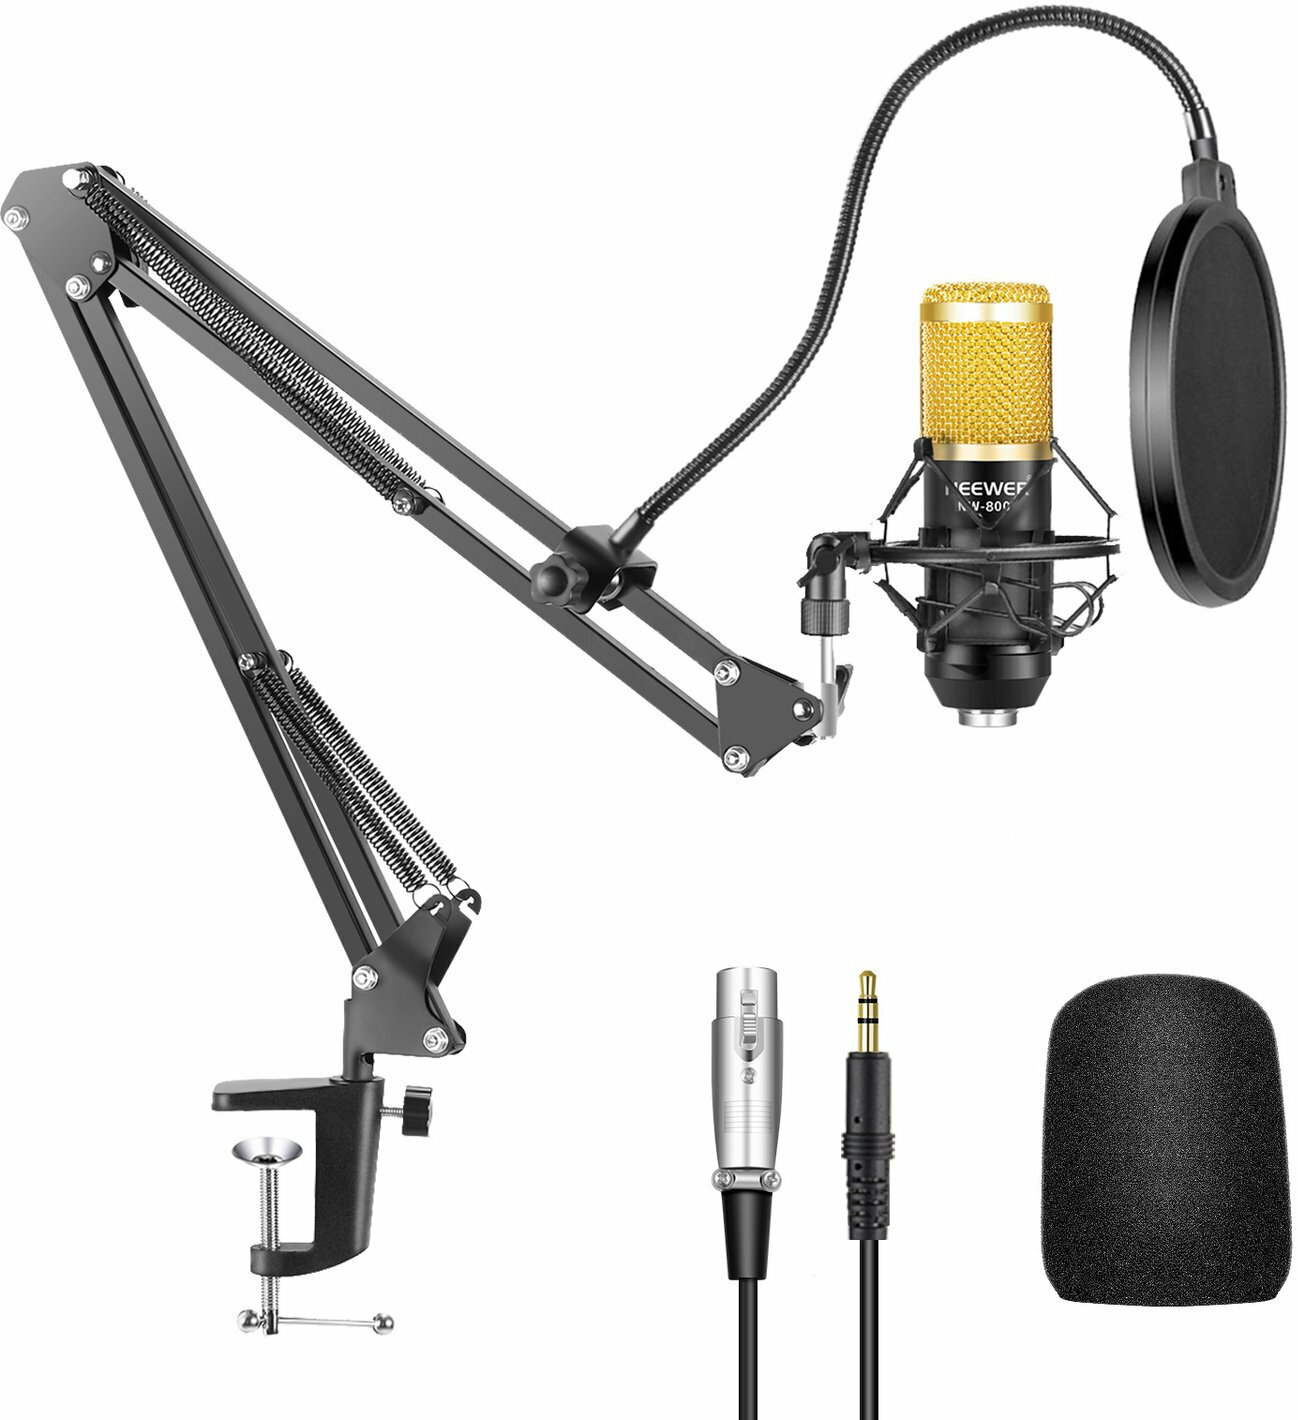 Microfone condensador de estúdio Neewer NW-800 6in1 Microfone condensador de estúdio